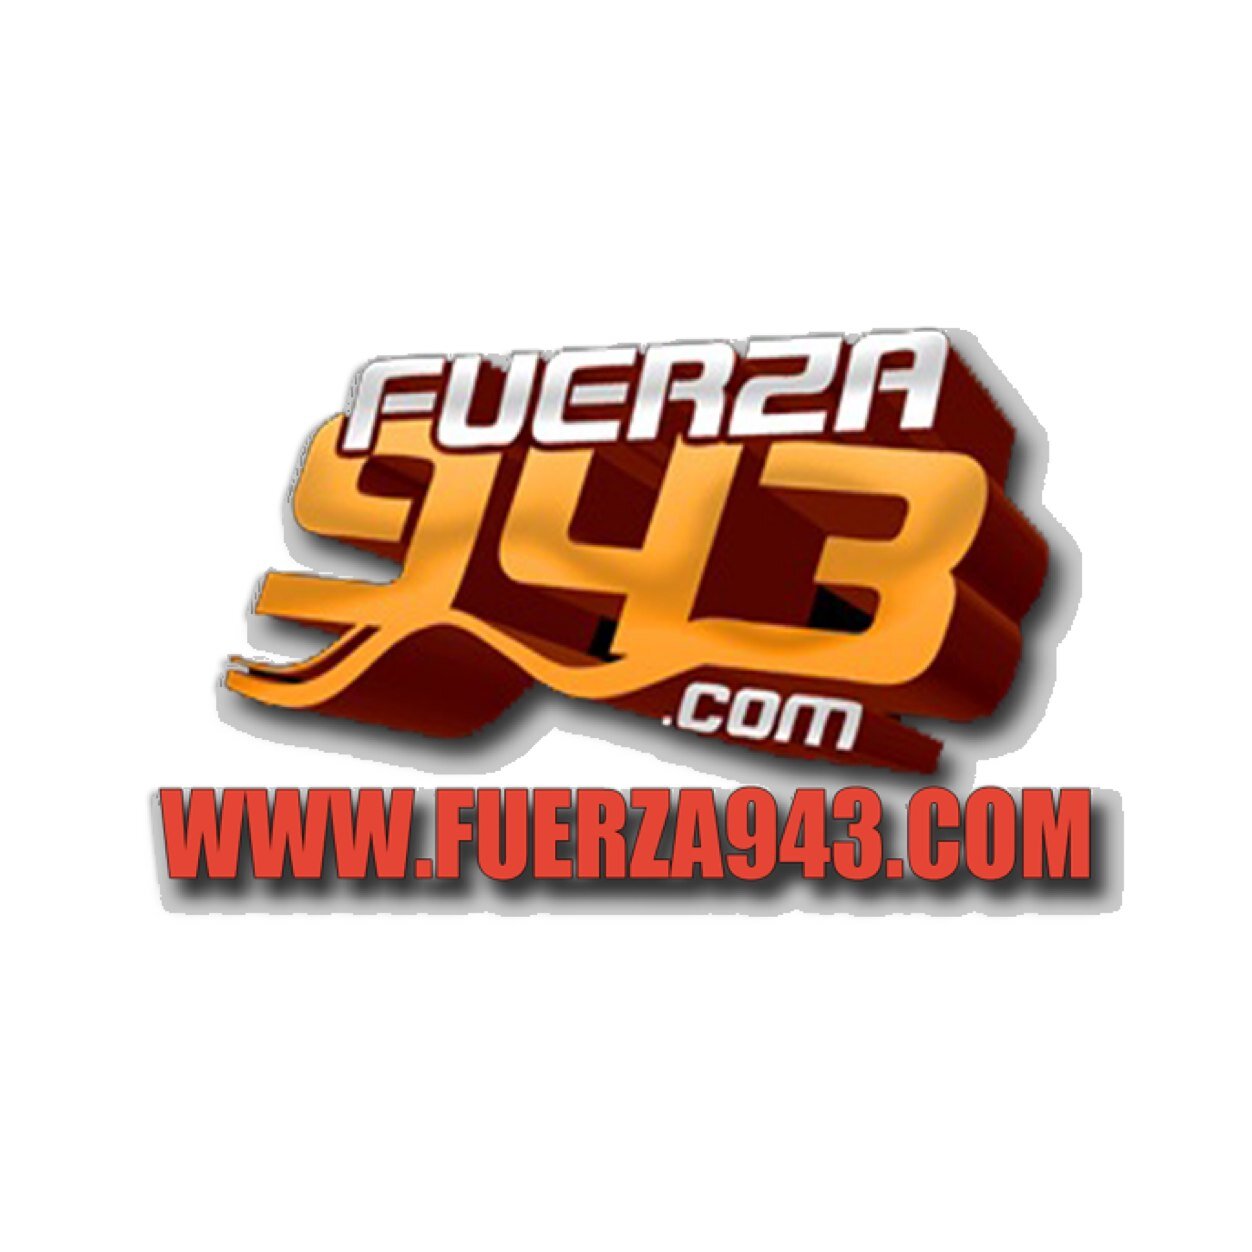 Fuerza943fm Profile Picture